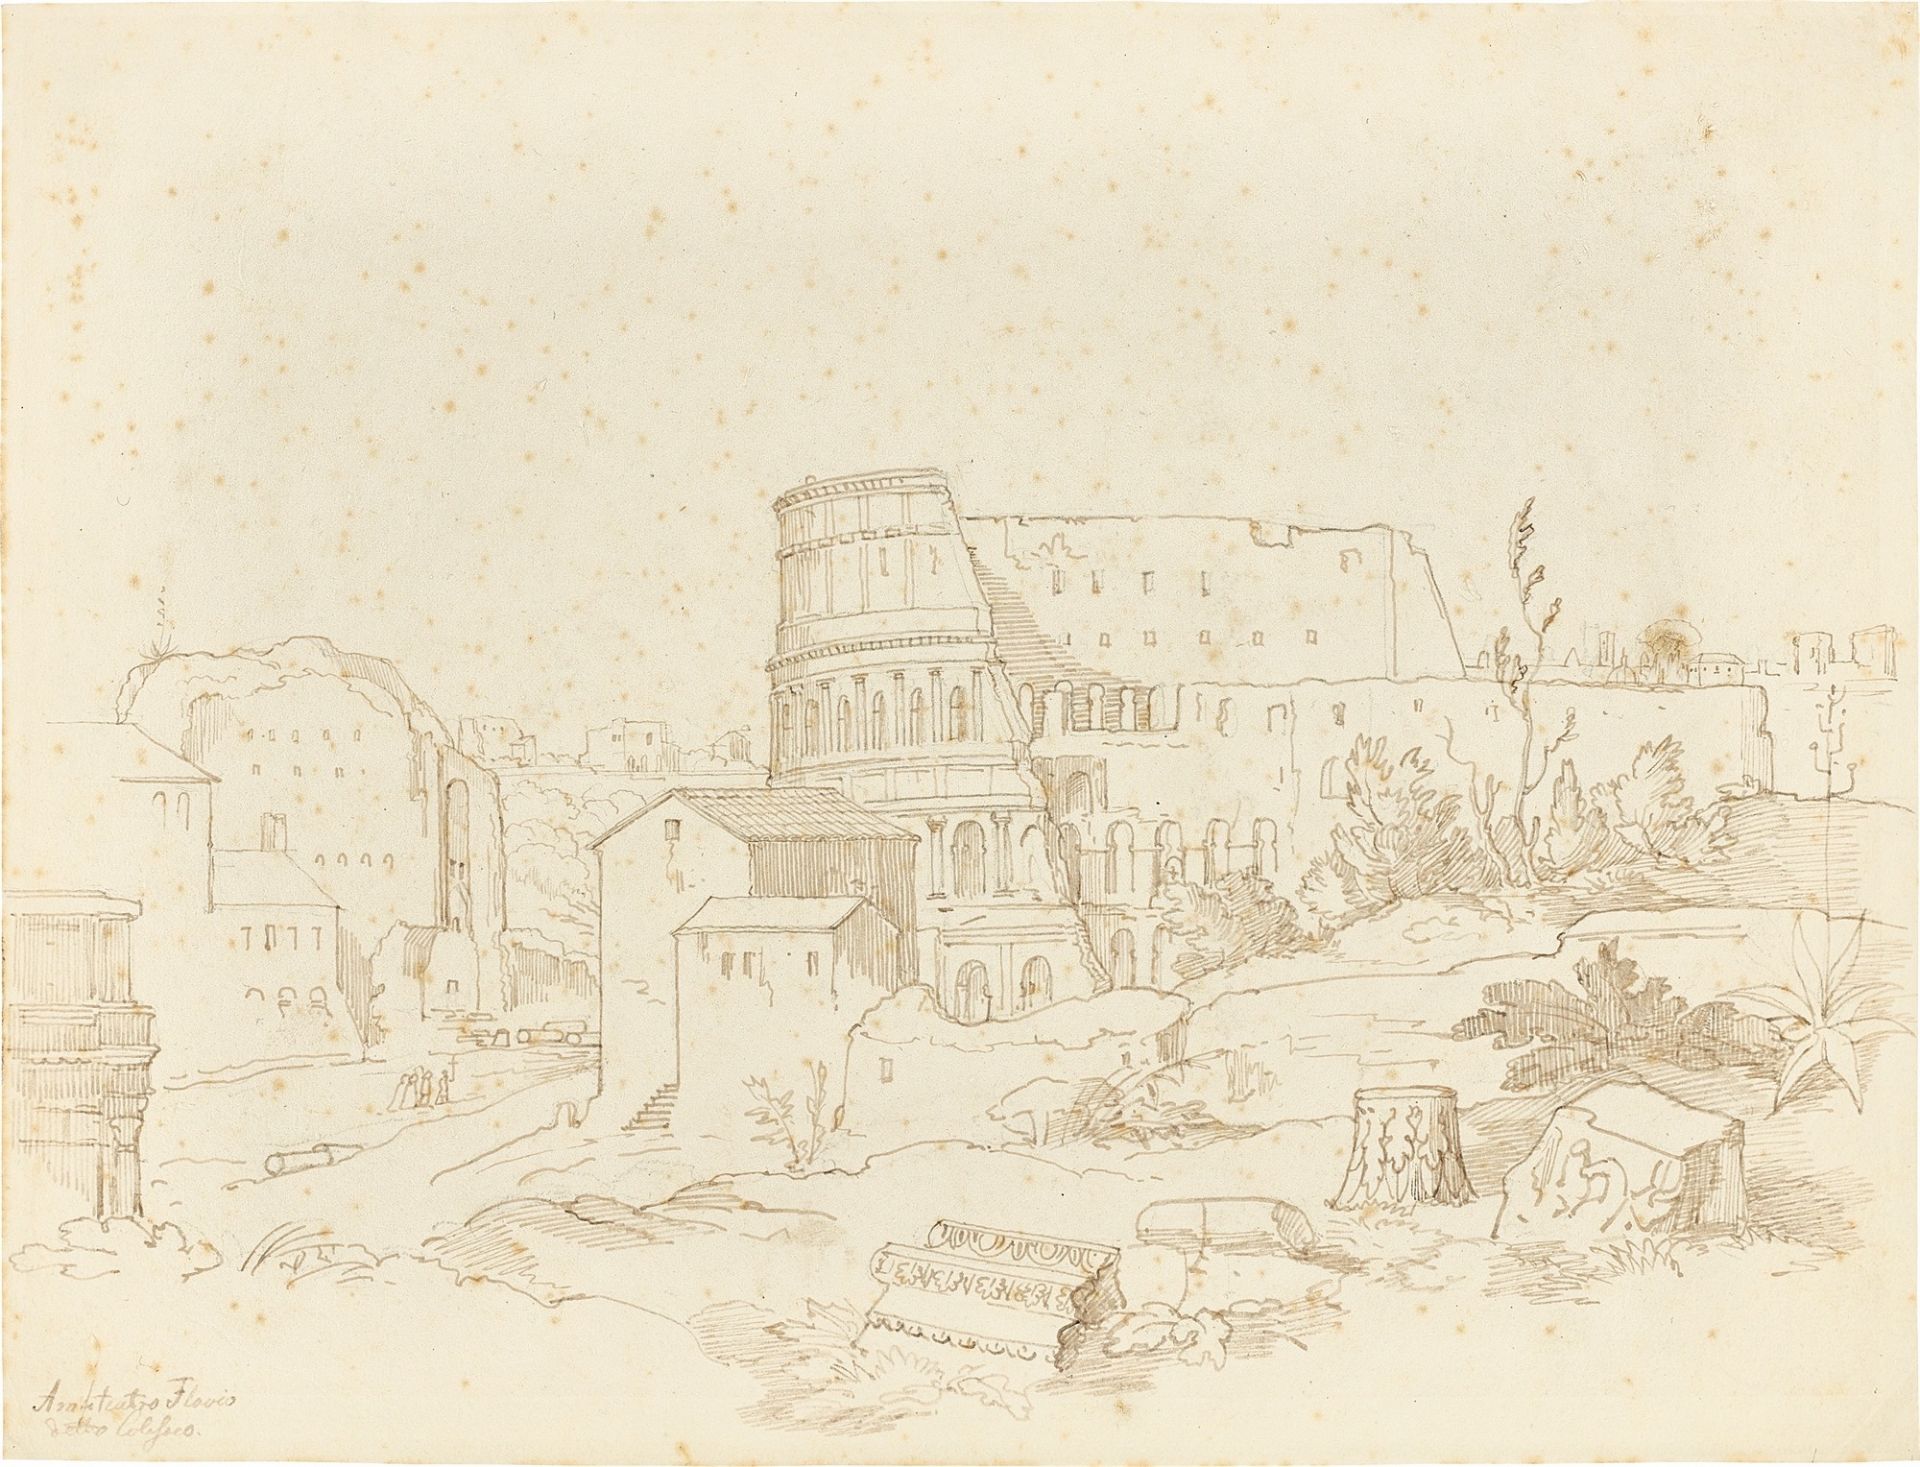 German, circa 1825/30. The Colosseum in Rome.